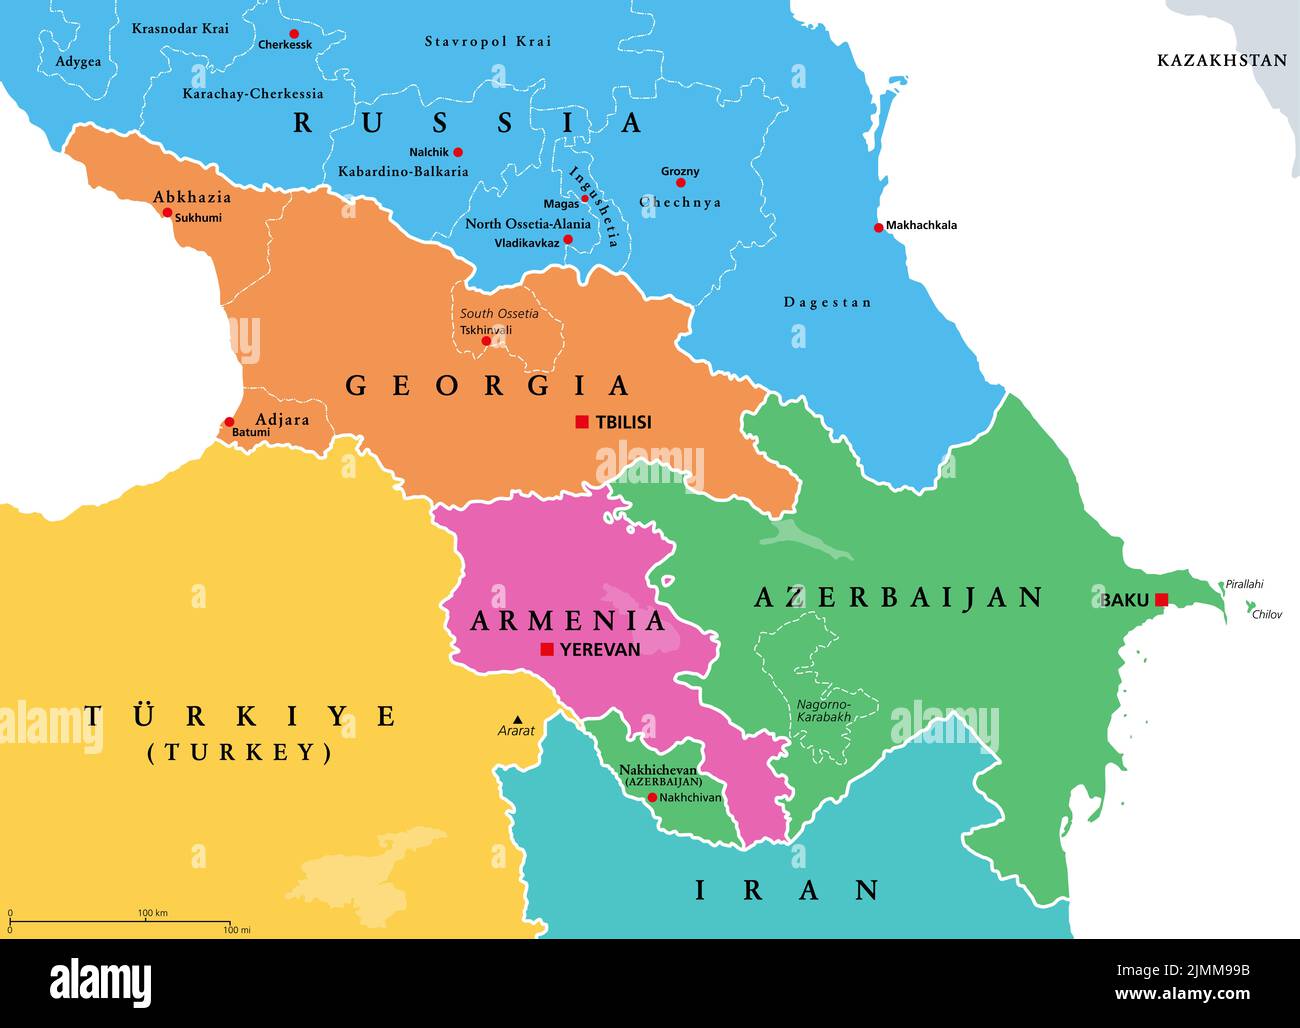 Cáucaso, Cáucaso, mapa político coloreado. Región entre el Mar Negro y el Mar Caspio, ocupada principalmente por Armenia, Azerbaiyán, Georgia y el sur de Rusia. Foto de stock